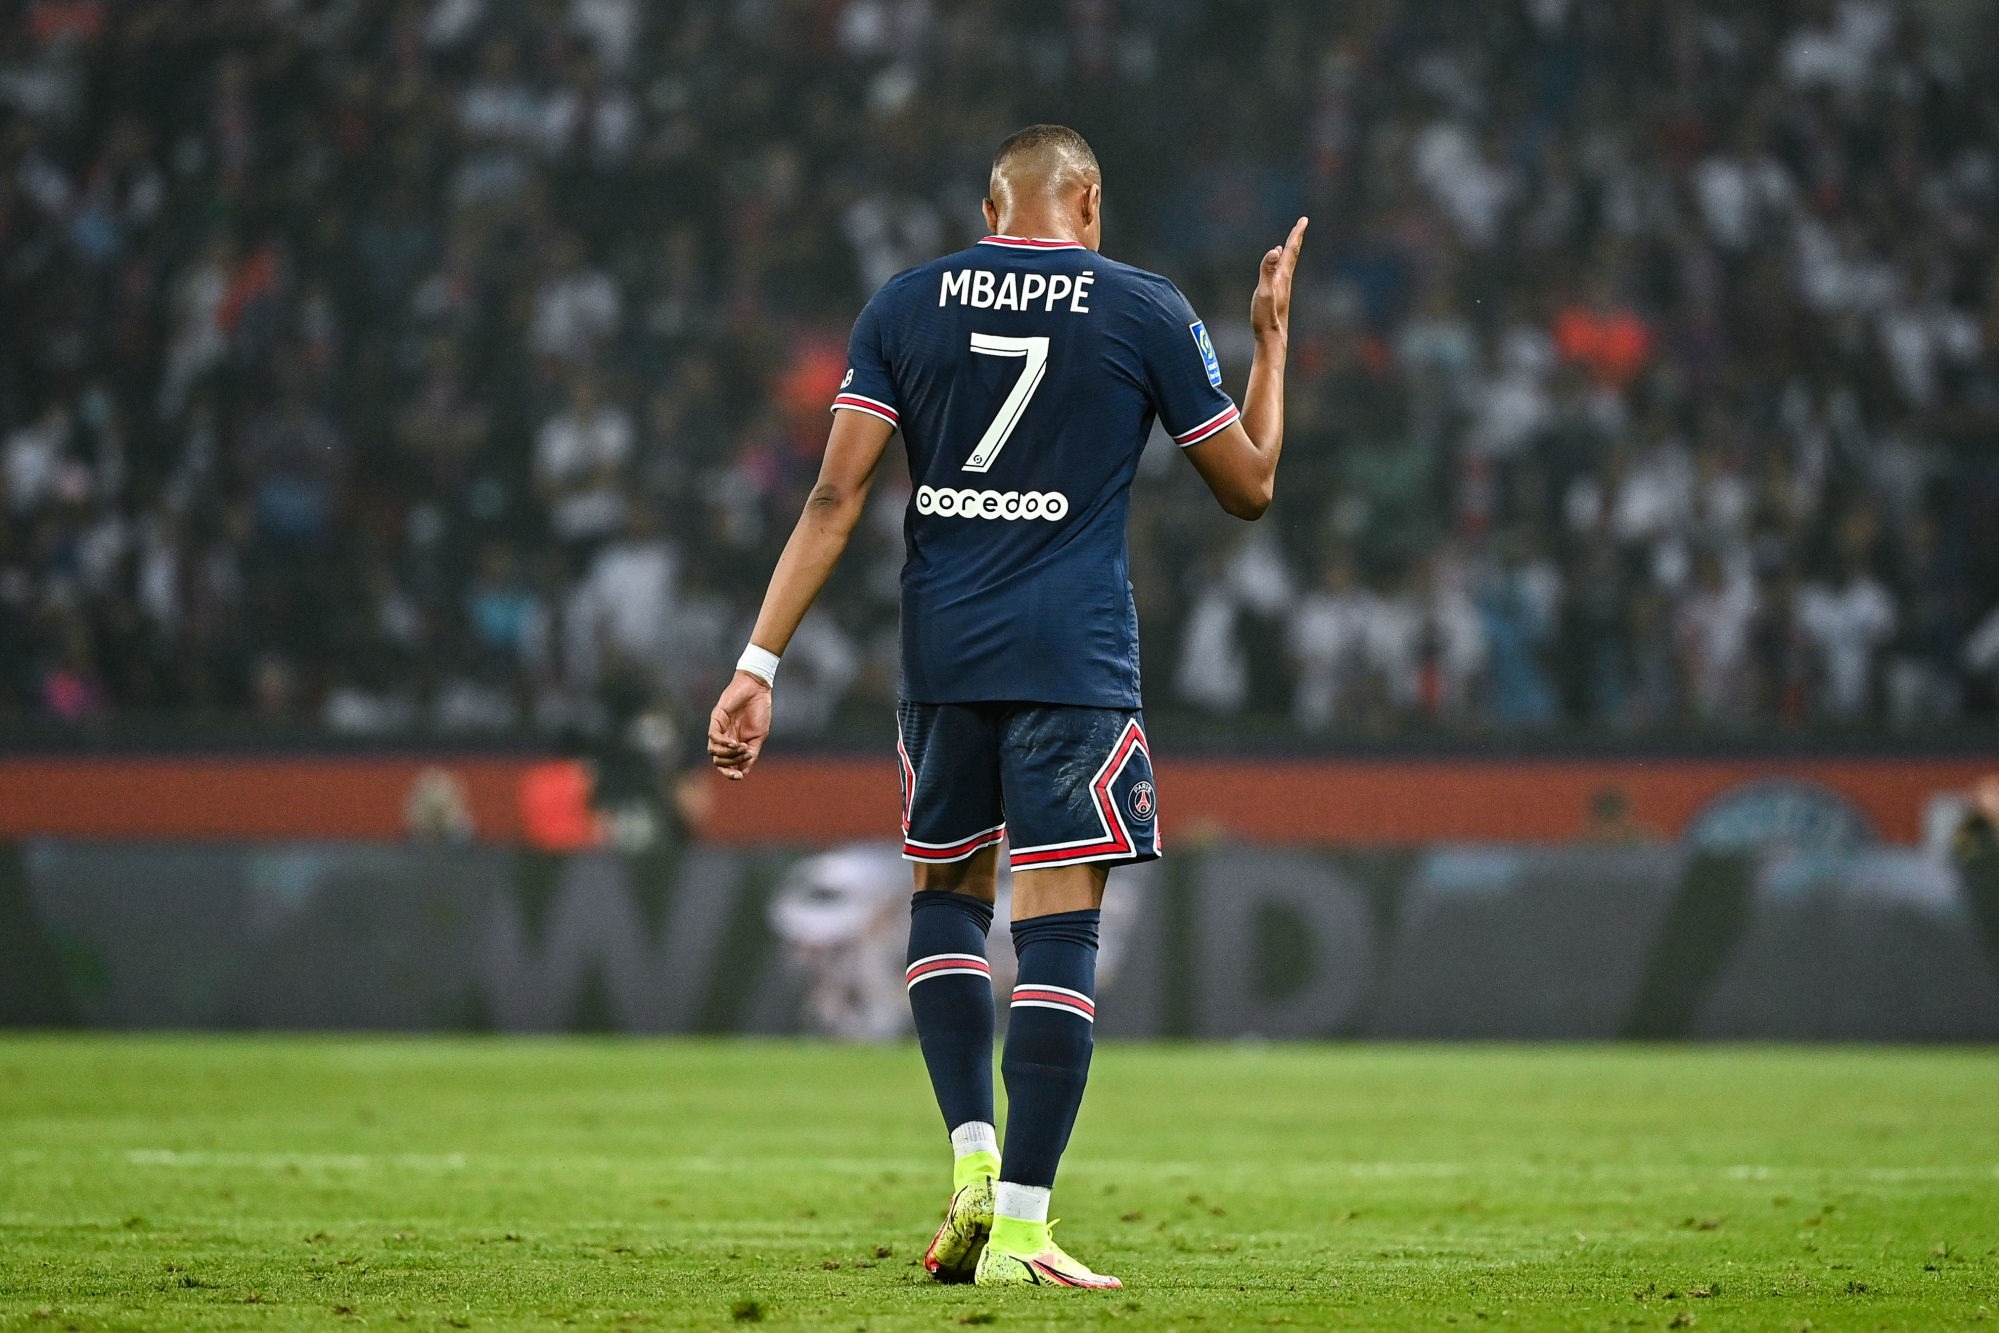 Le probable transfert de Mbappé au Real pourrait entrainer le départ d’un autre cadre du PSG